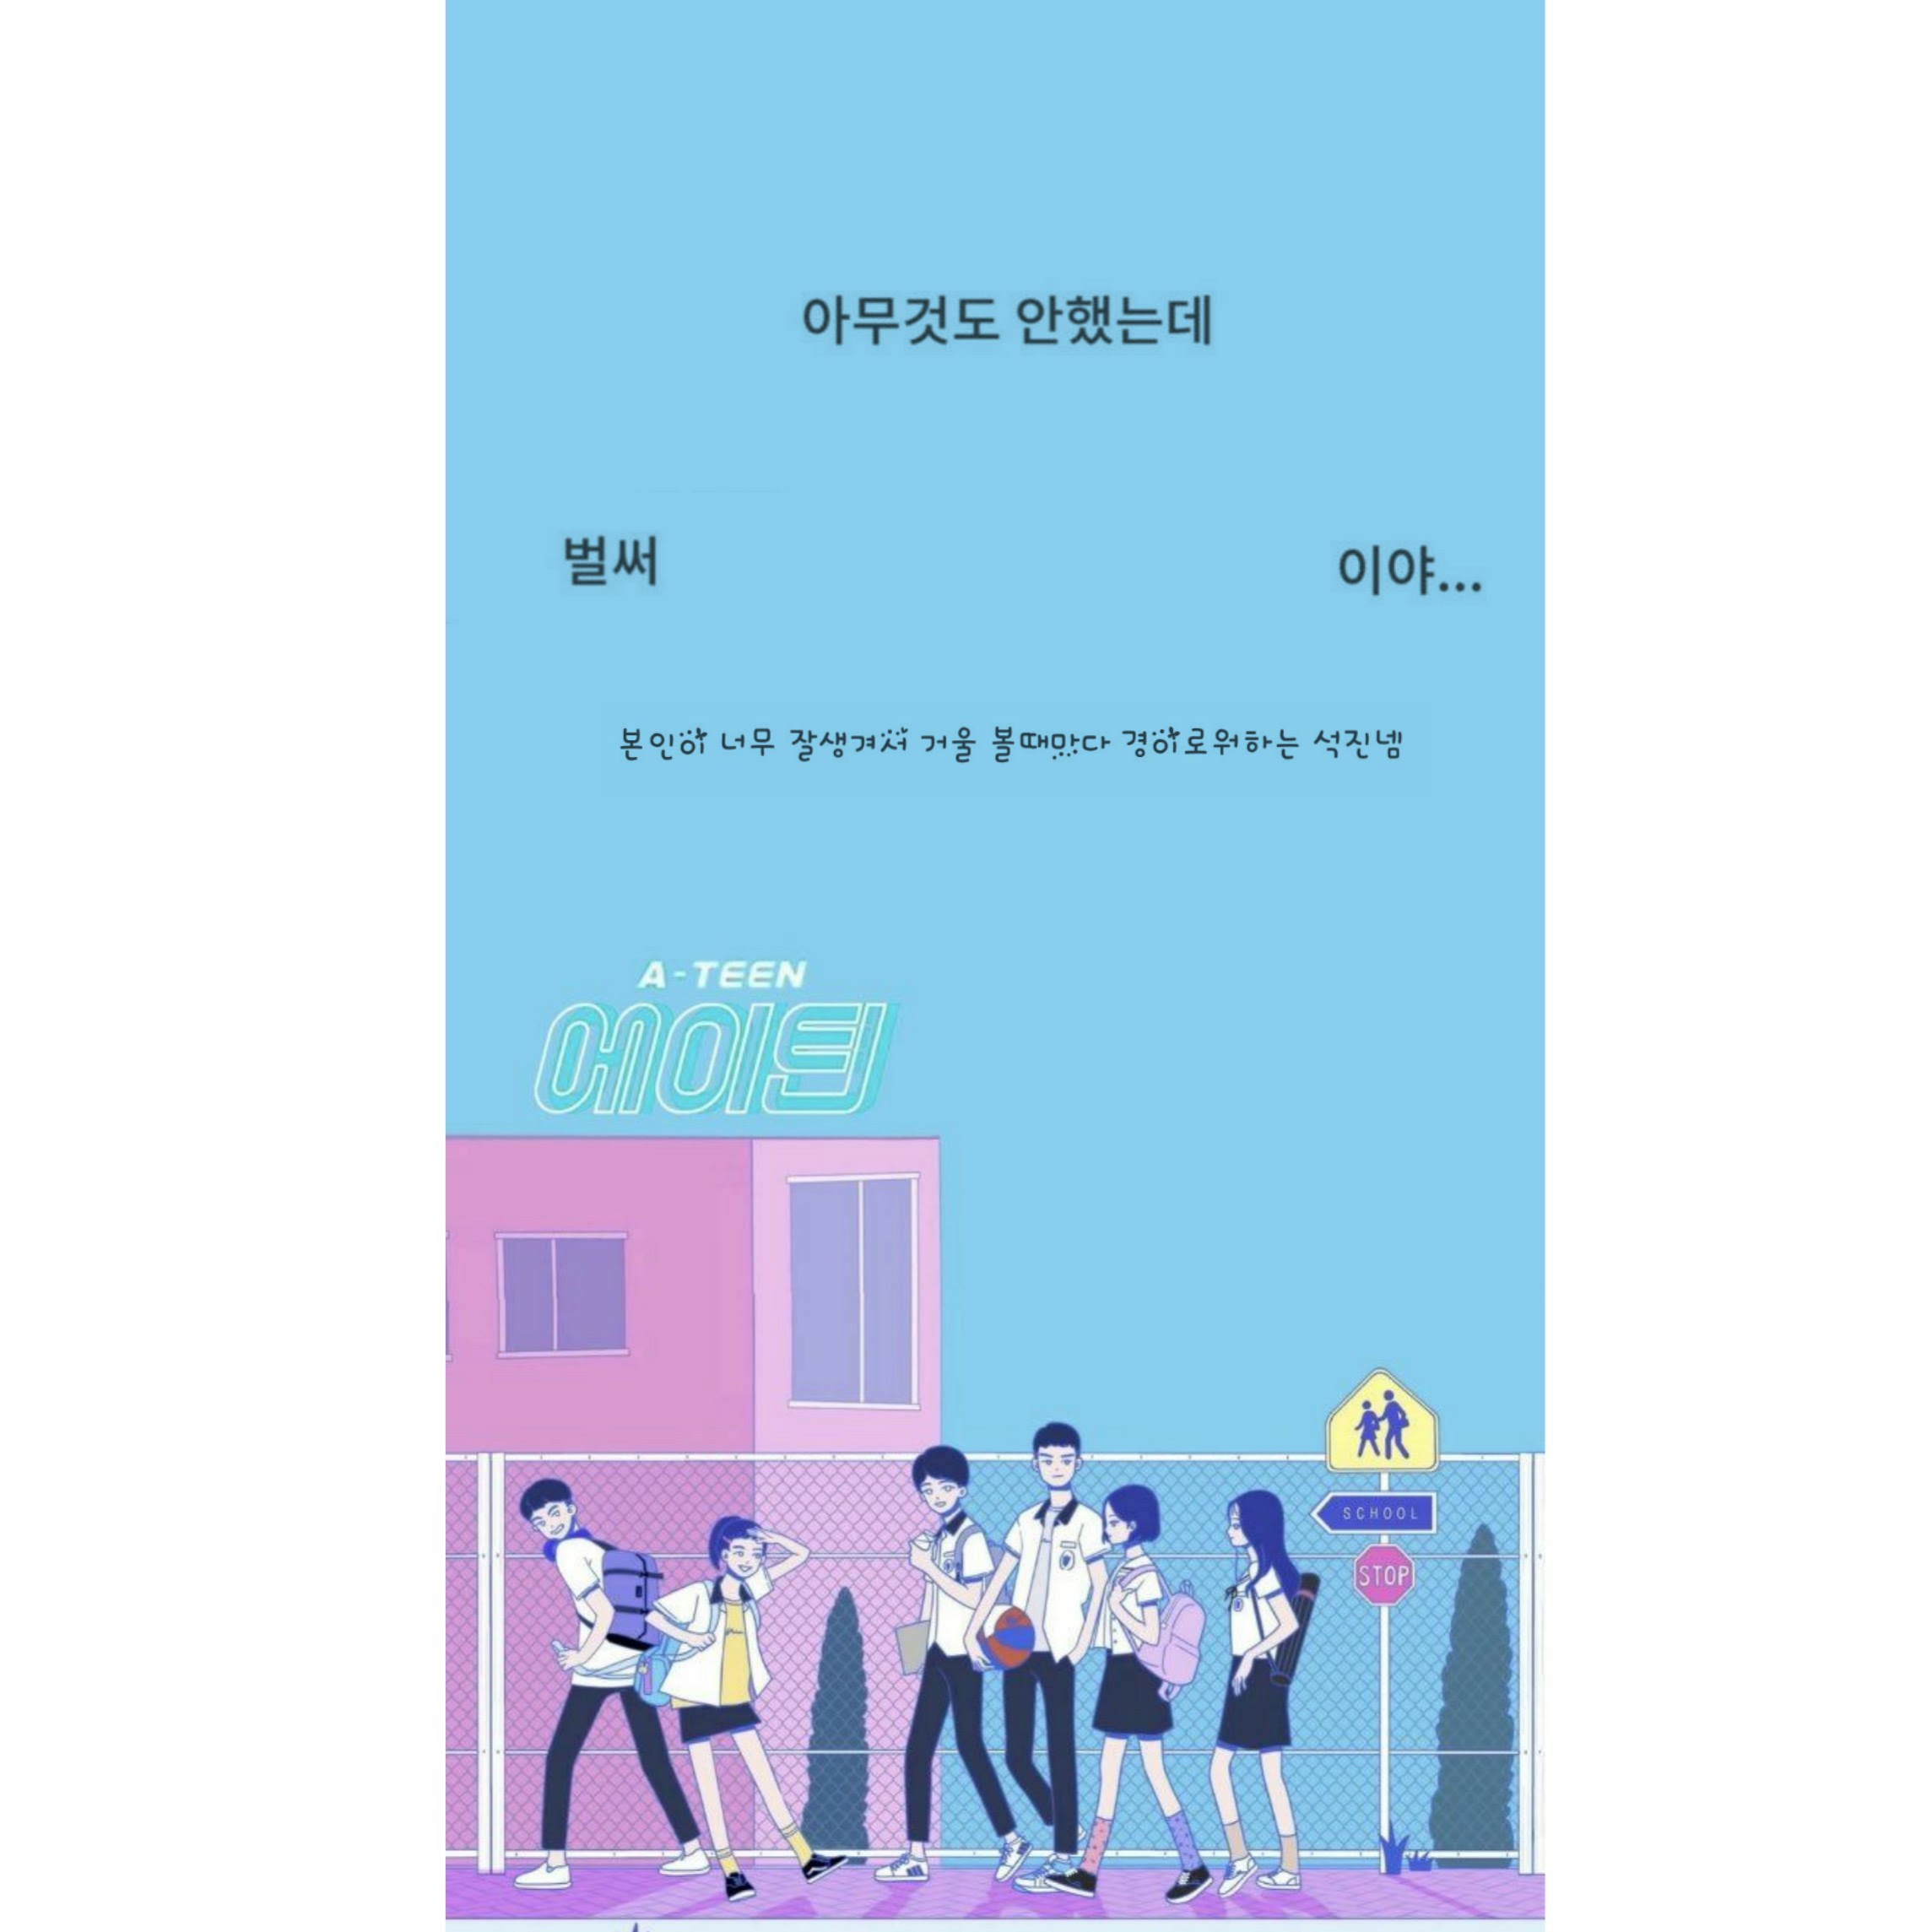 ここからダウンロード Iphone 壁紙 韓国 Jpbestwallpaper